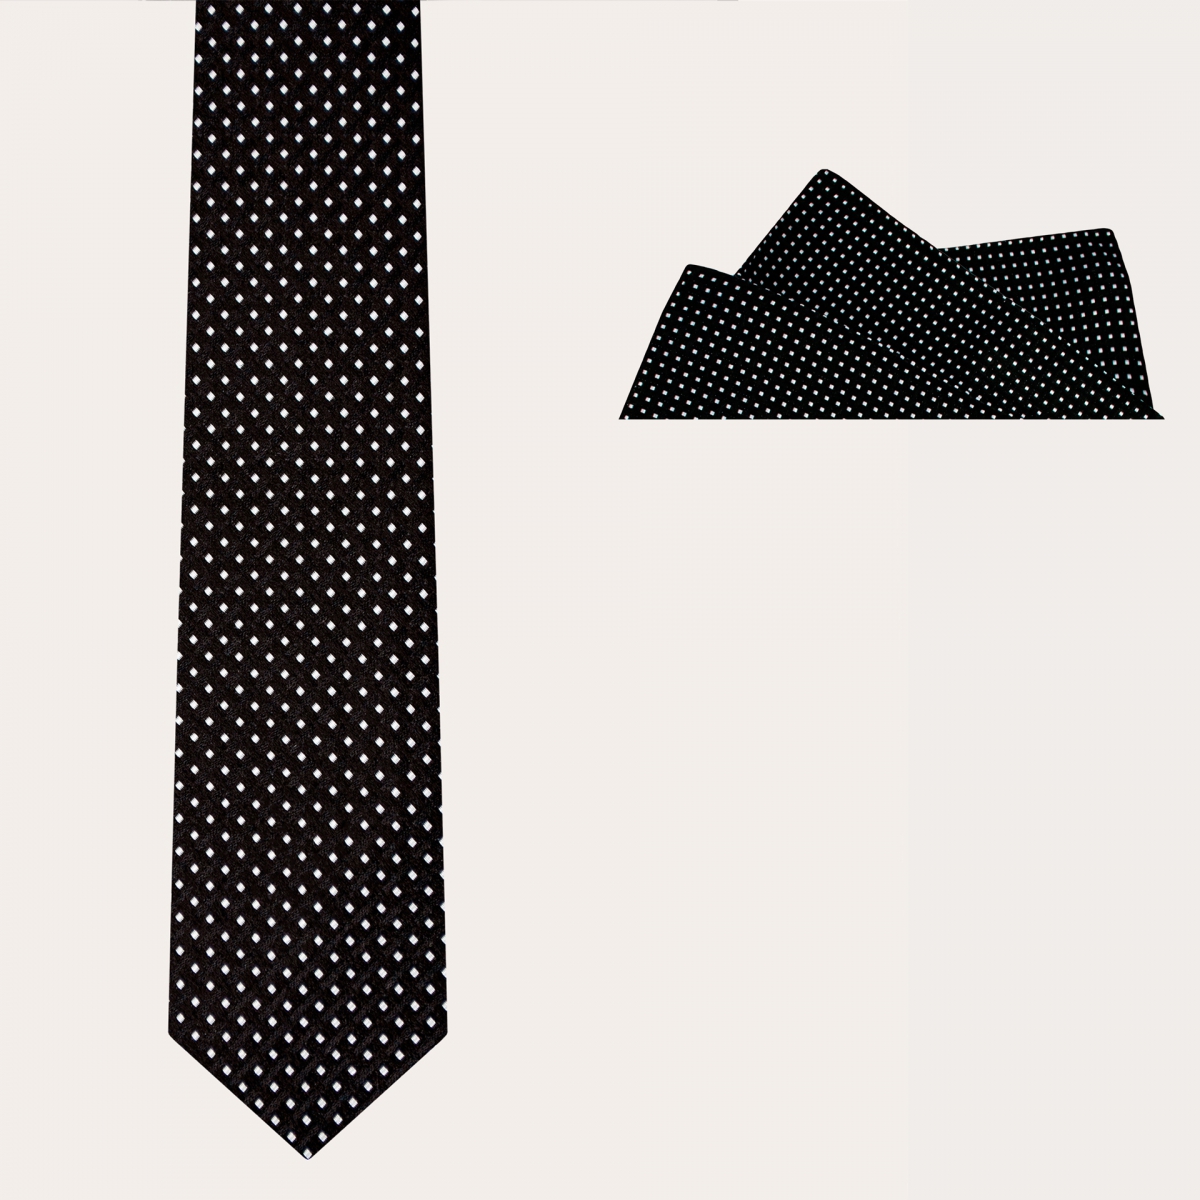 BRUCLE Conjunto de ceremonia corbata y pañuelo de bolsillo, negro con estampado de puntos geométricos